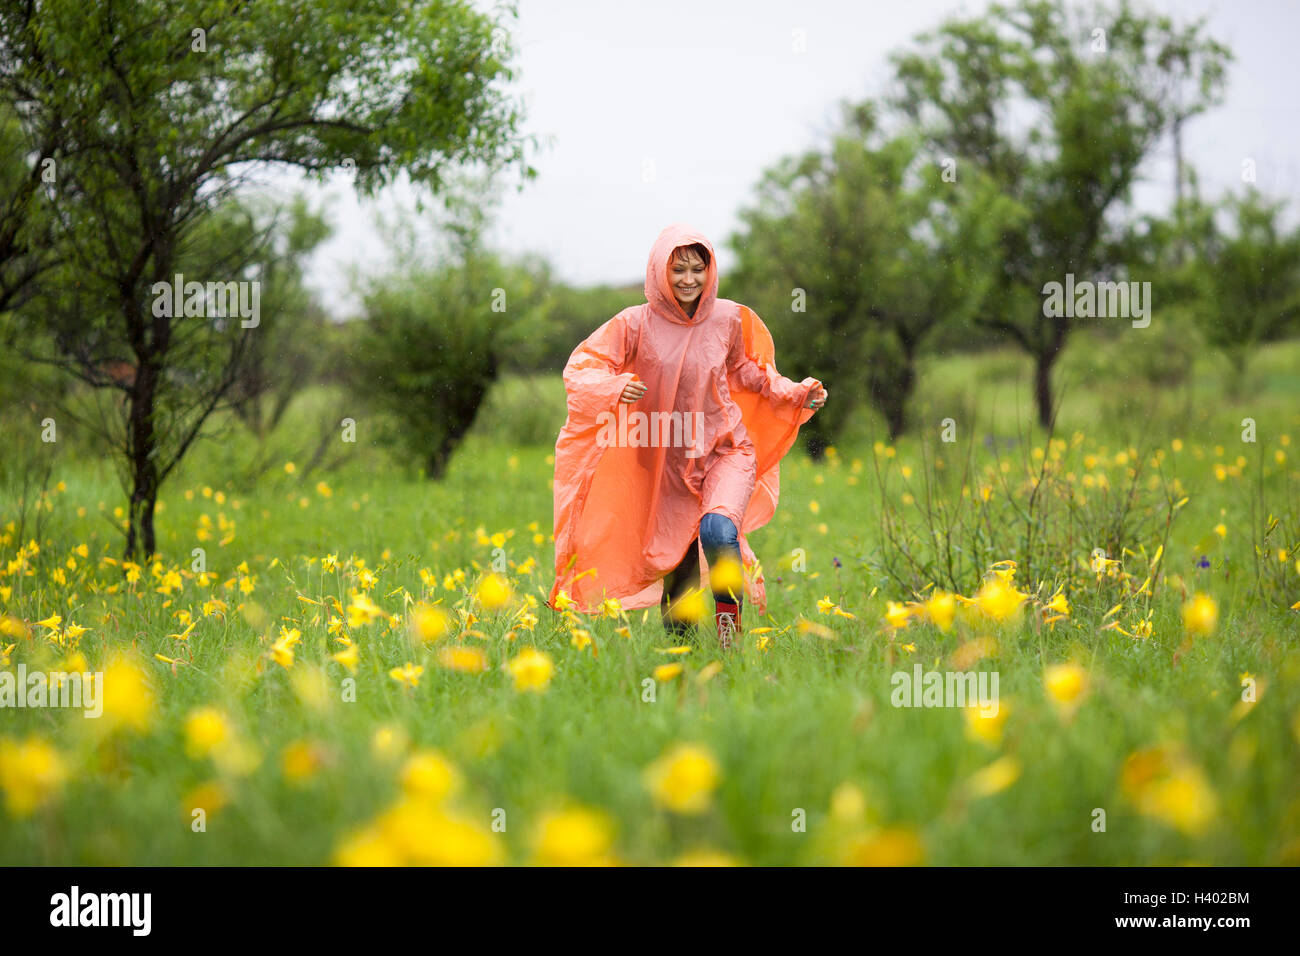 Mujer vistiendo impermeable girando en medio de las plantas con flores amarillas en la temporada de lluvias Foto de stock